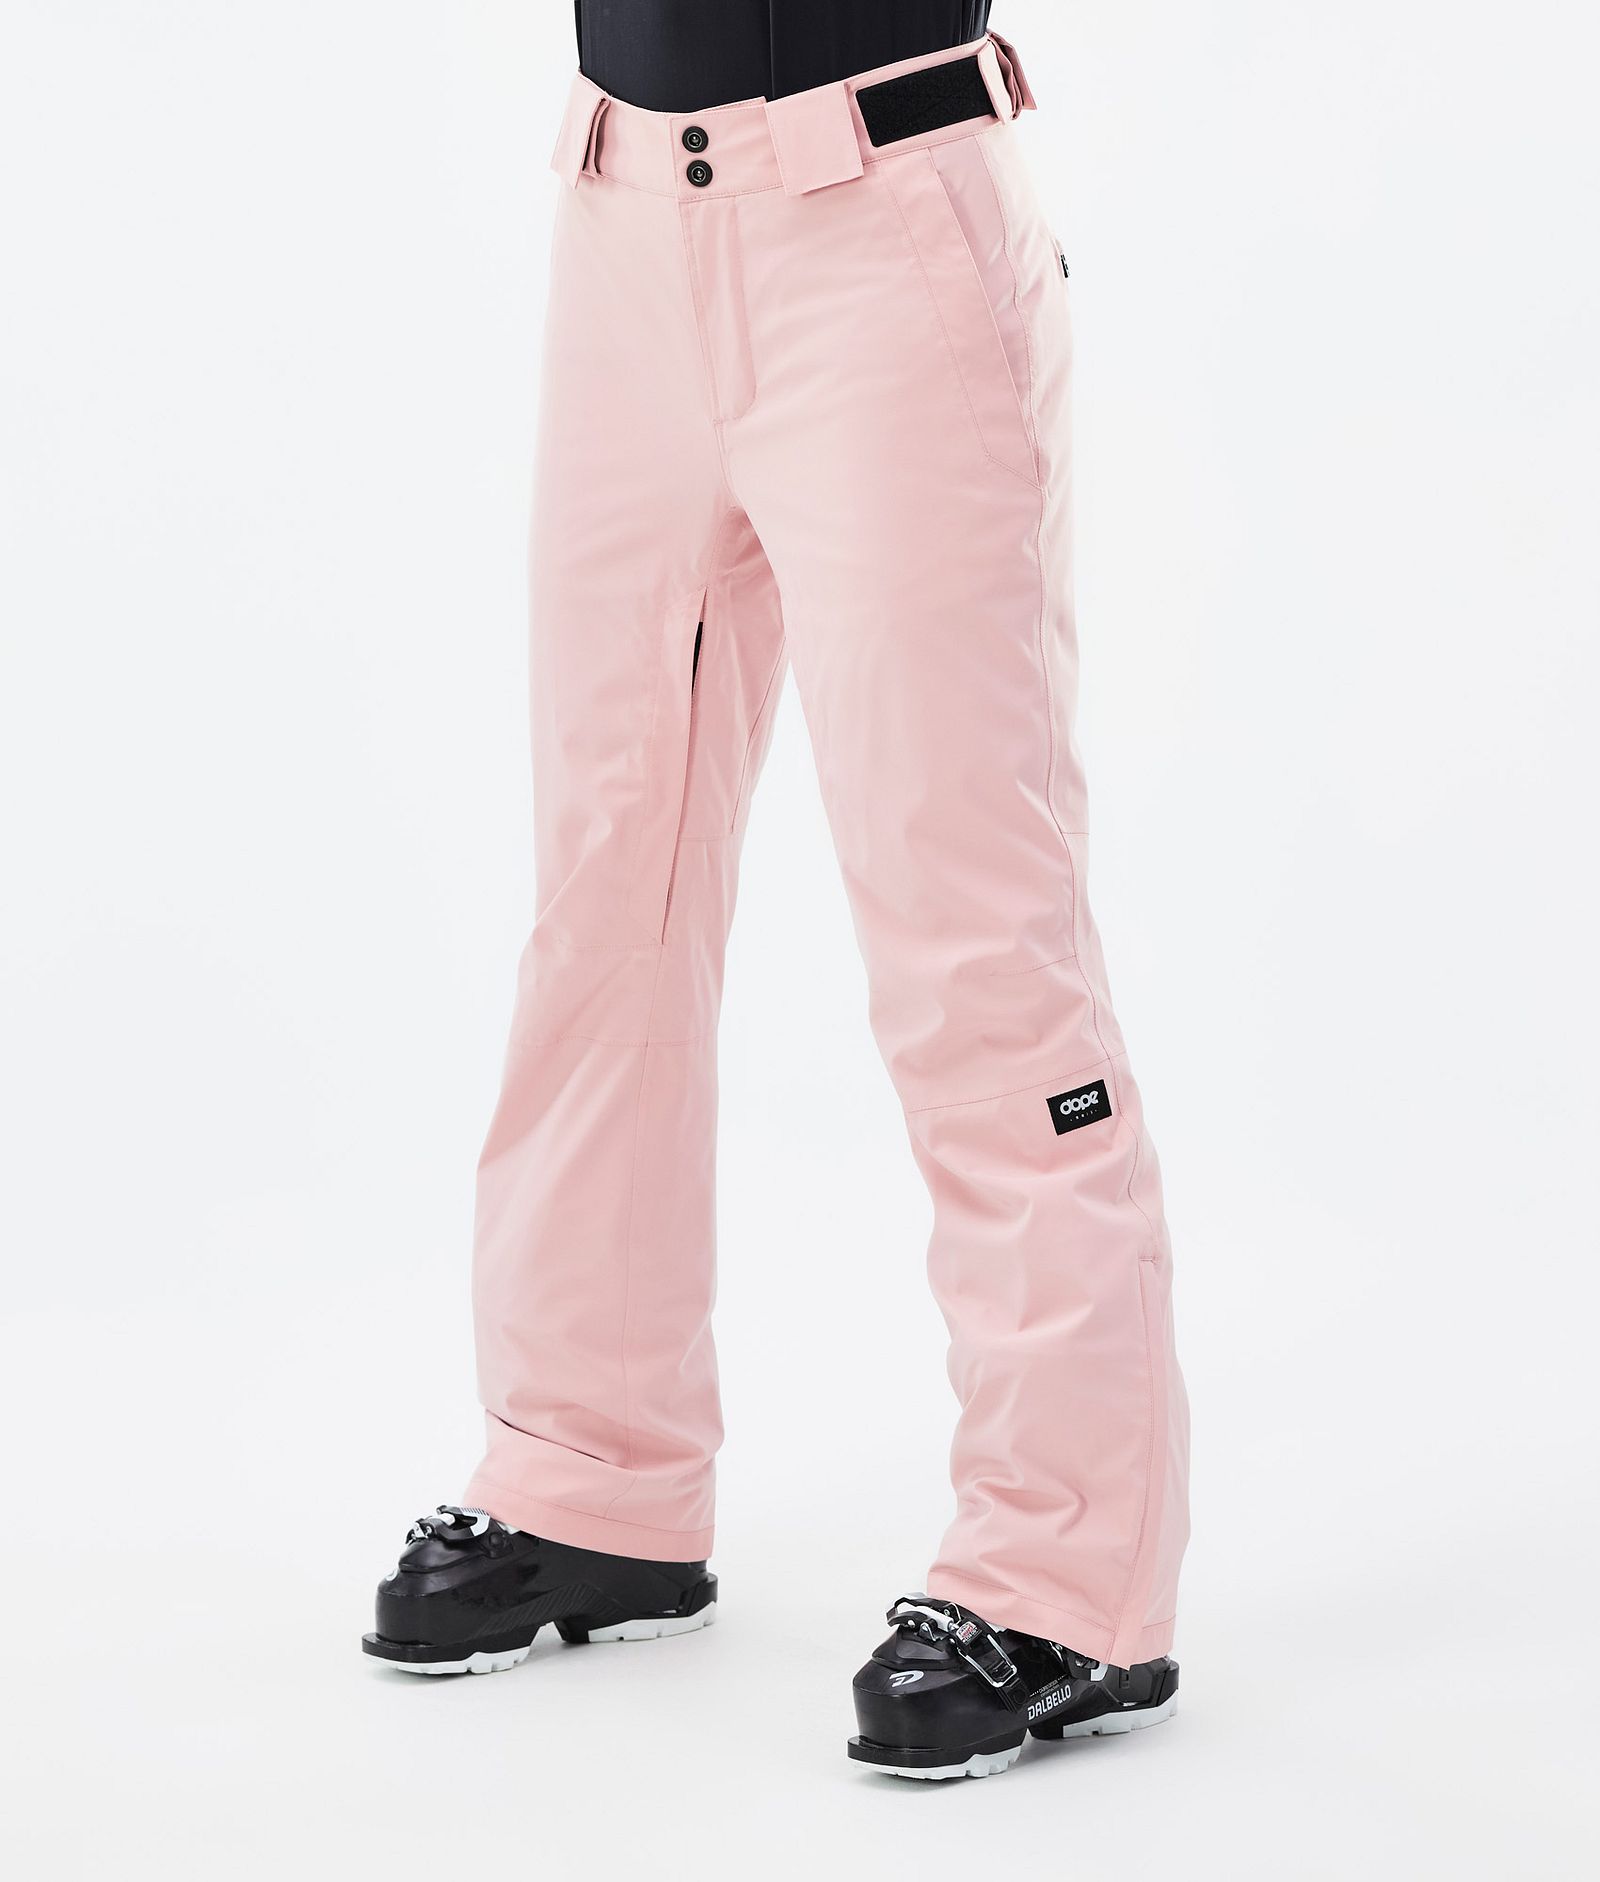 Con W 2022 Pantalon de Ski Femme Soft Pink, Image 1 sur 5